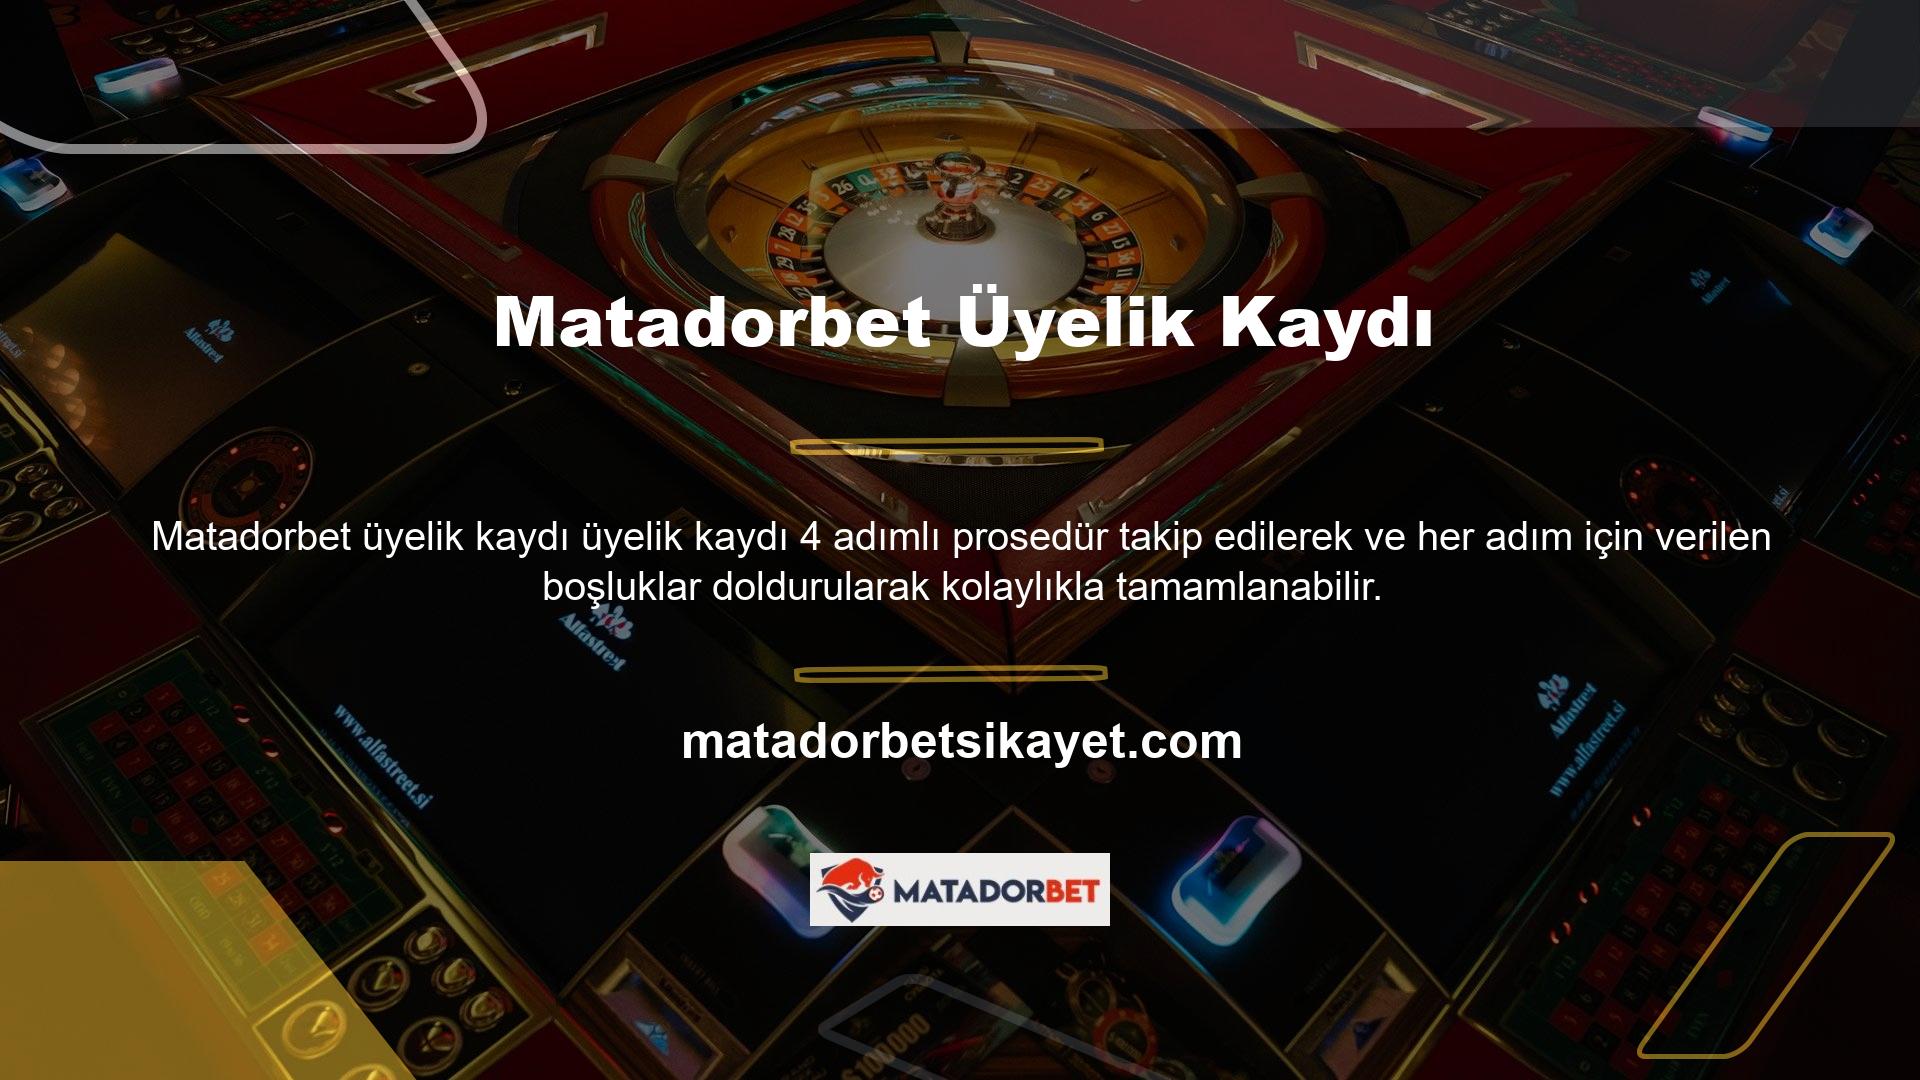 Matadorbet canlı bahis ve casino oyun sitesi, müşterilerine sunduğu hizmetlerden dolayı bahis sitesi pazarında oldukça popülerdir ve diğer sitelerden farklıdır